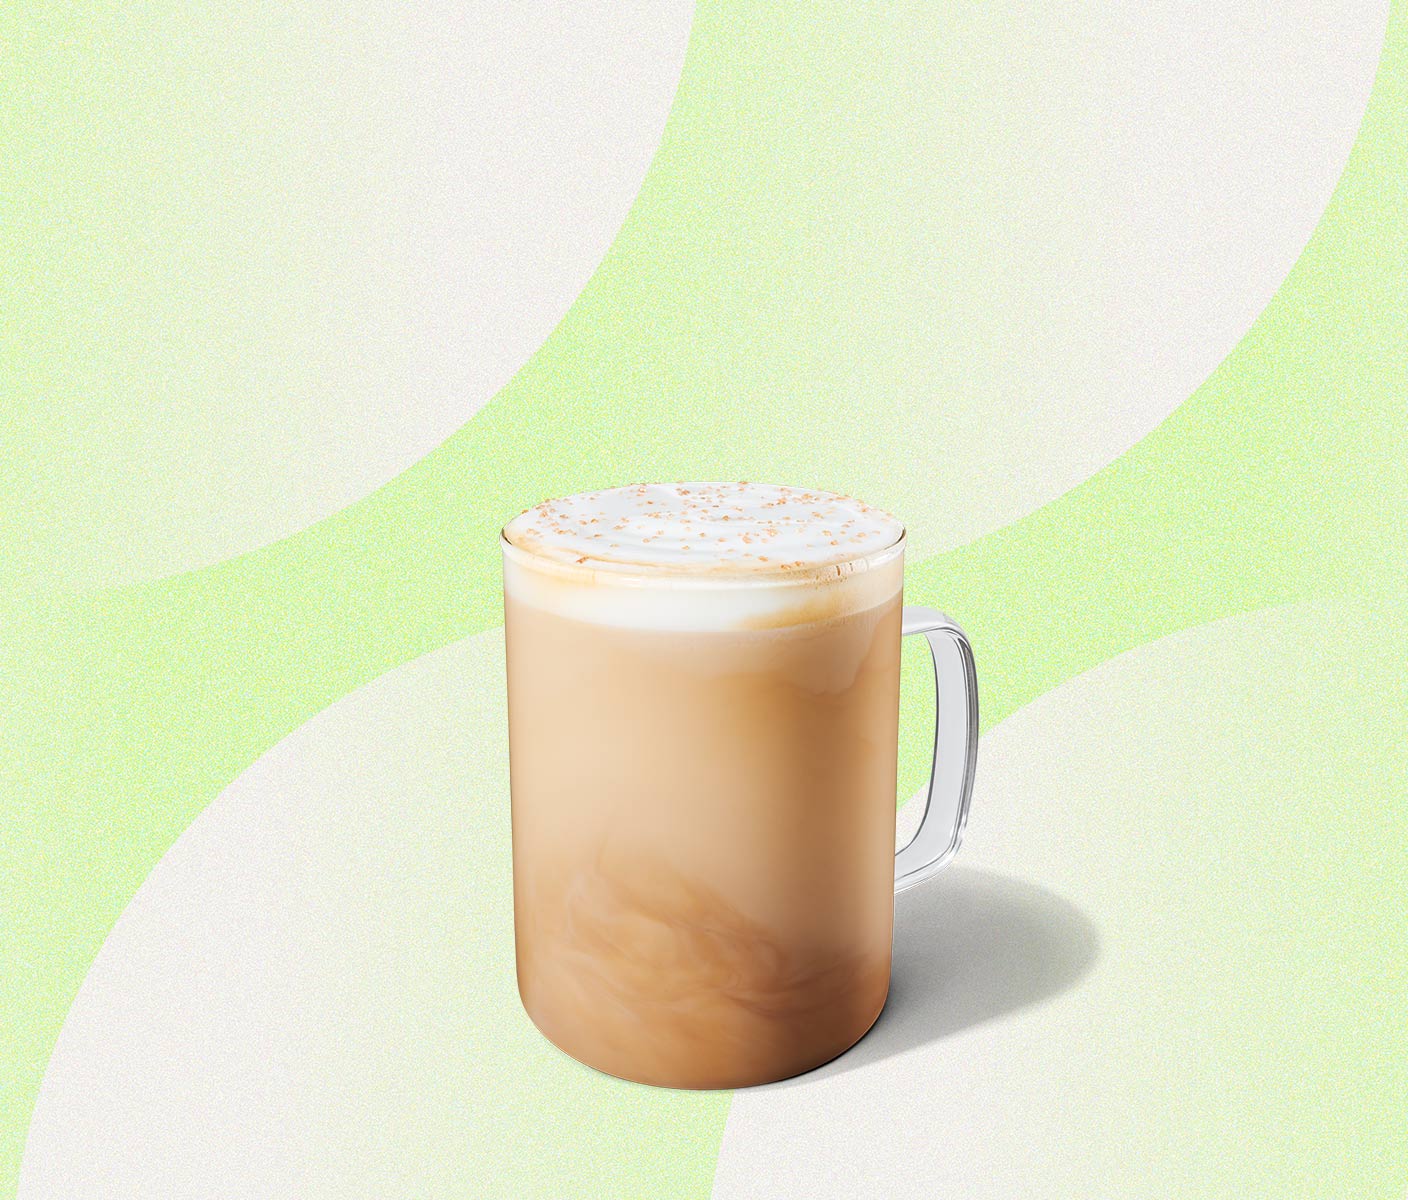 Creamy latte in a glass mug.